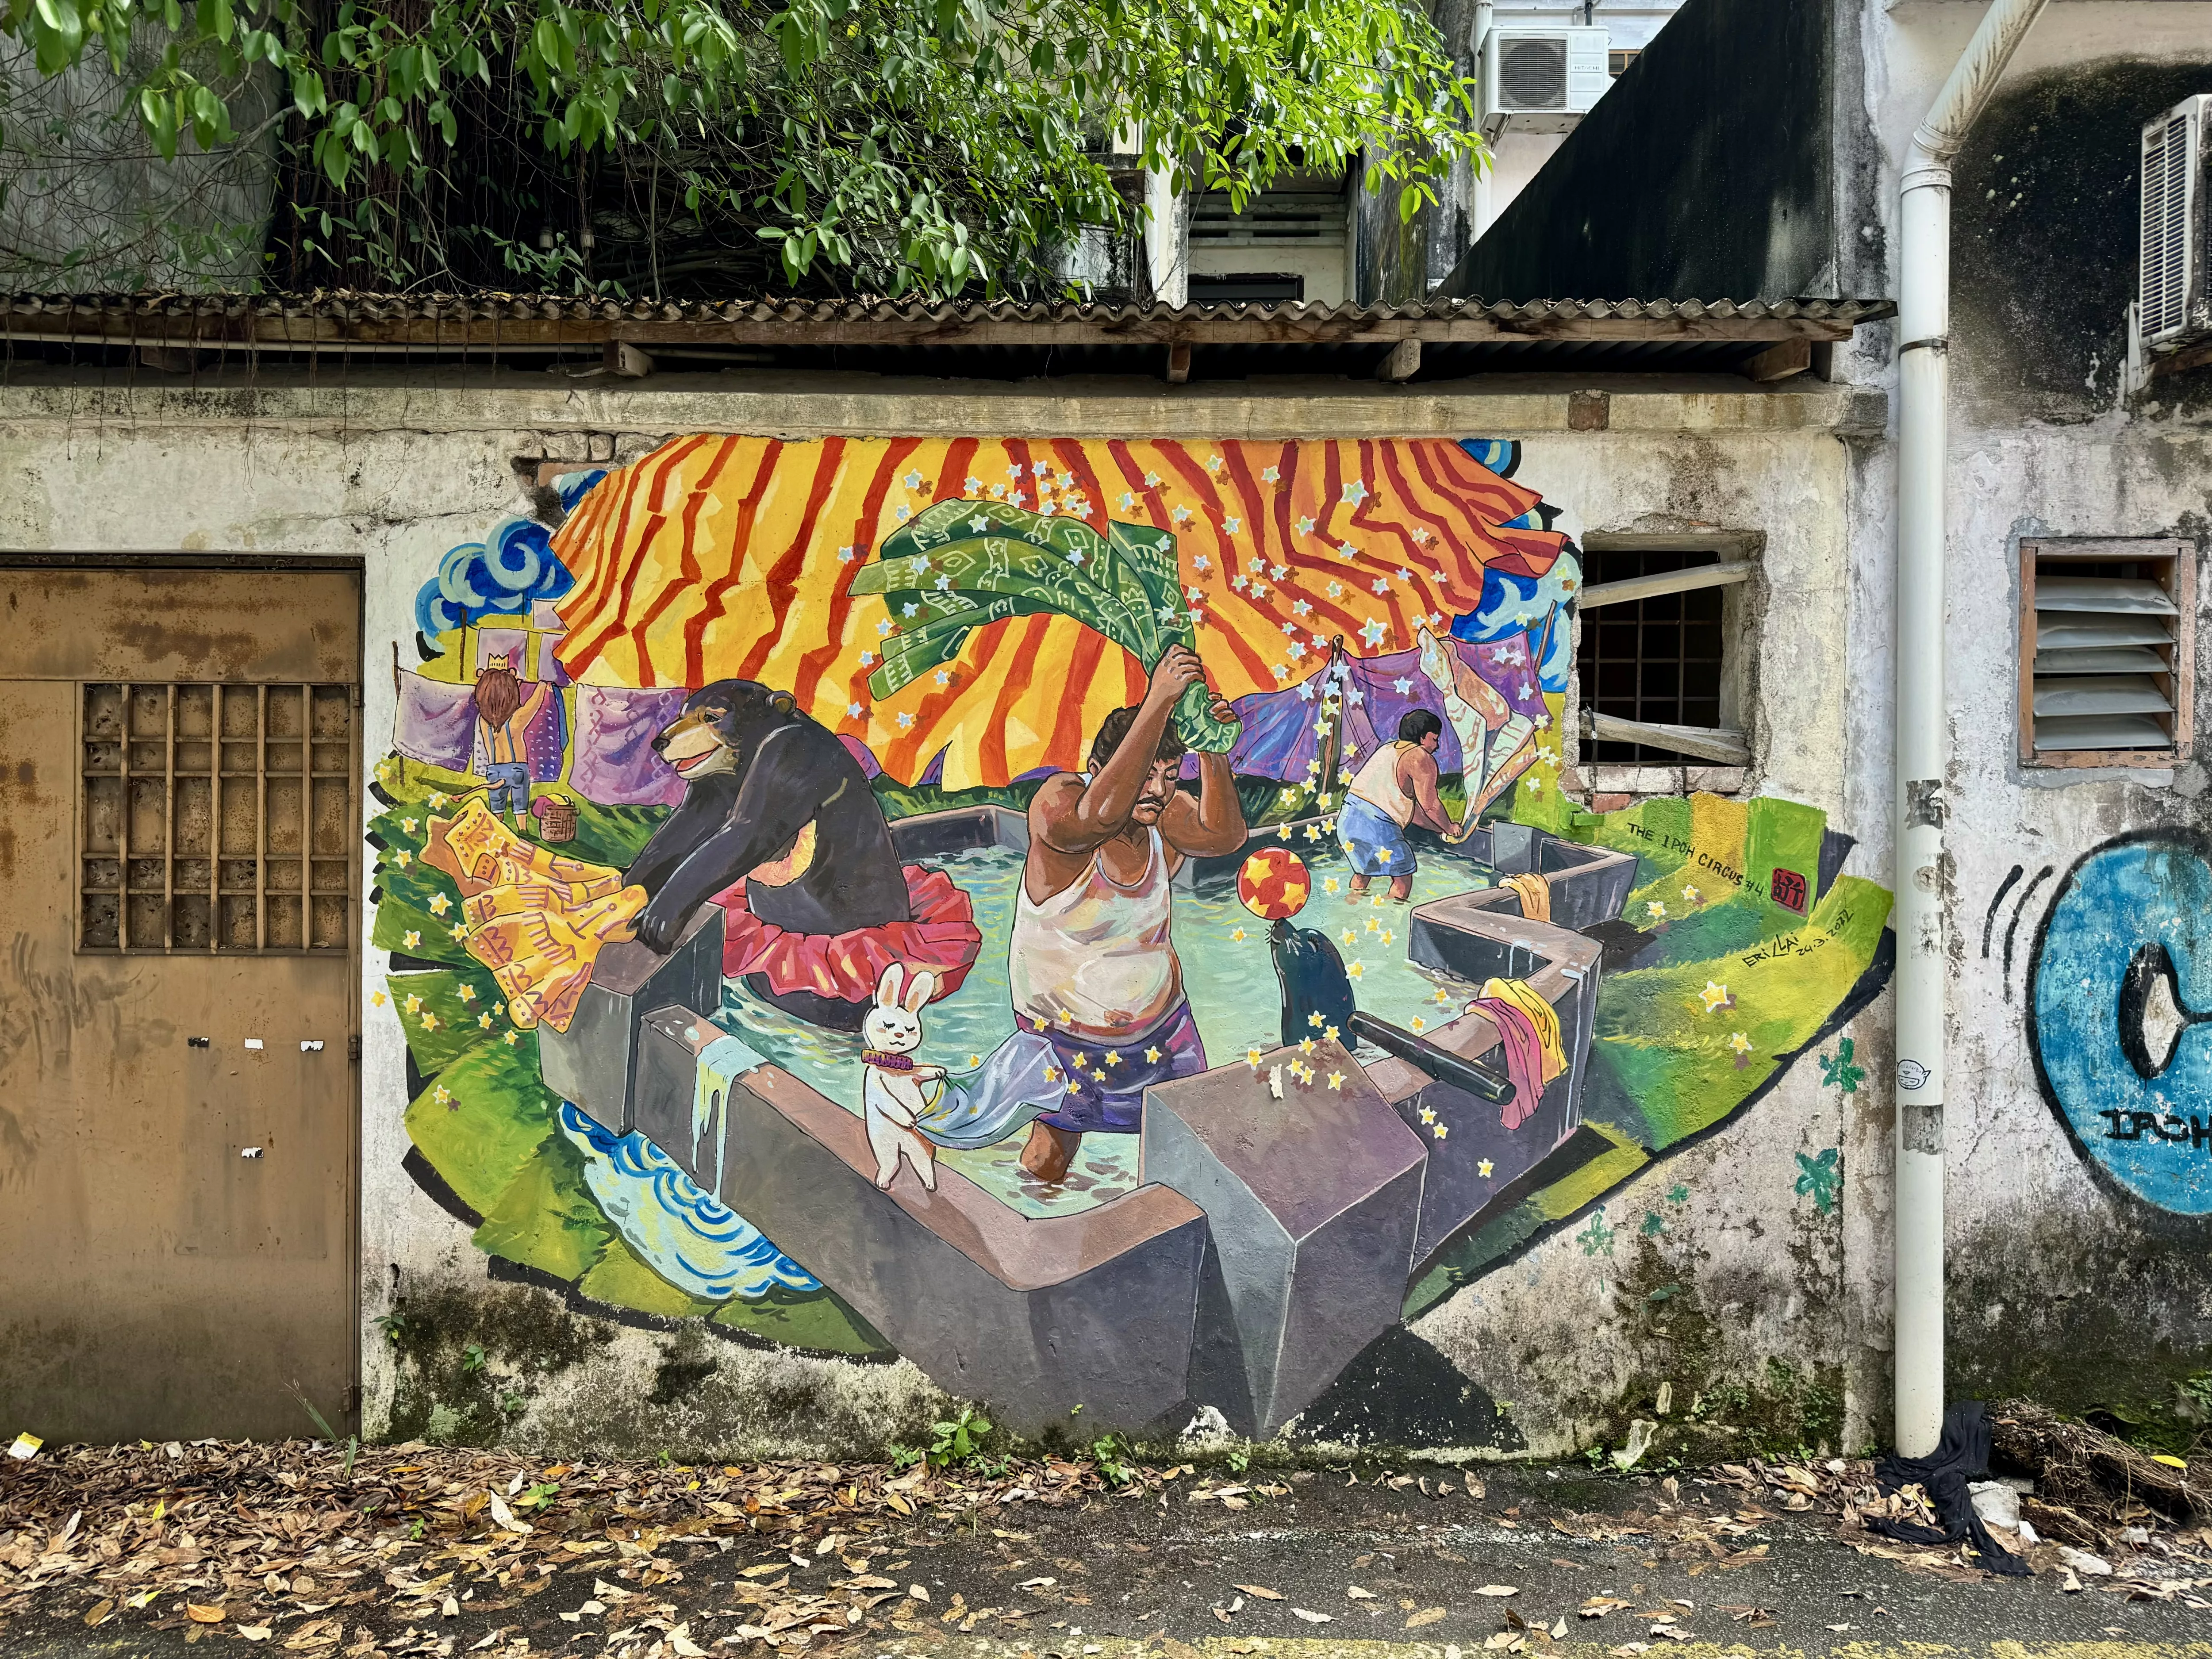 Street art in Ipoh, Perak, Malaysia